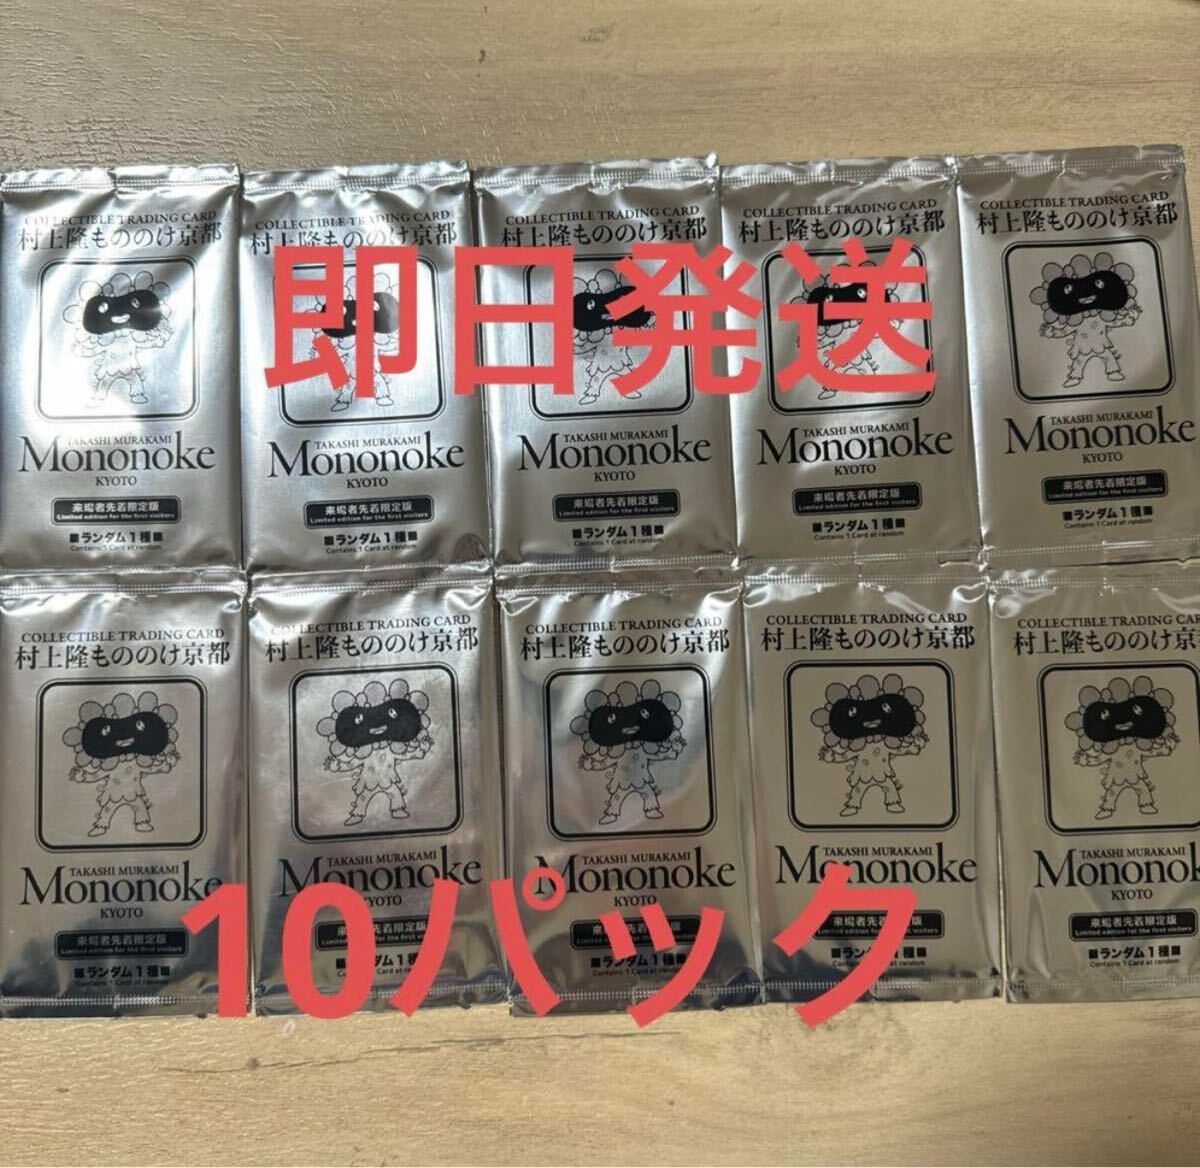 良好品】 『村上隆もののけ京都』 来場者限定特典カード 10パック